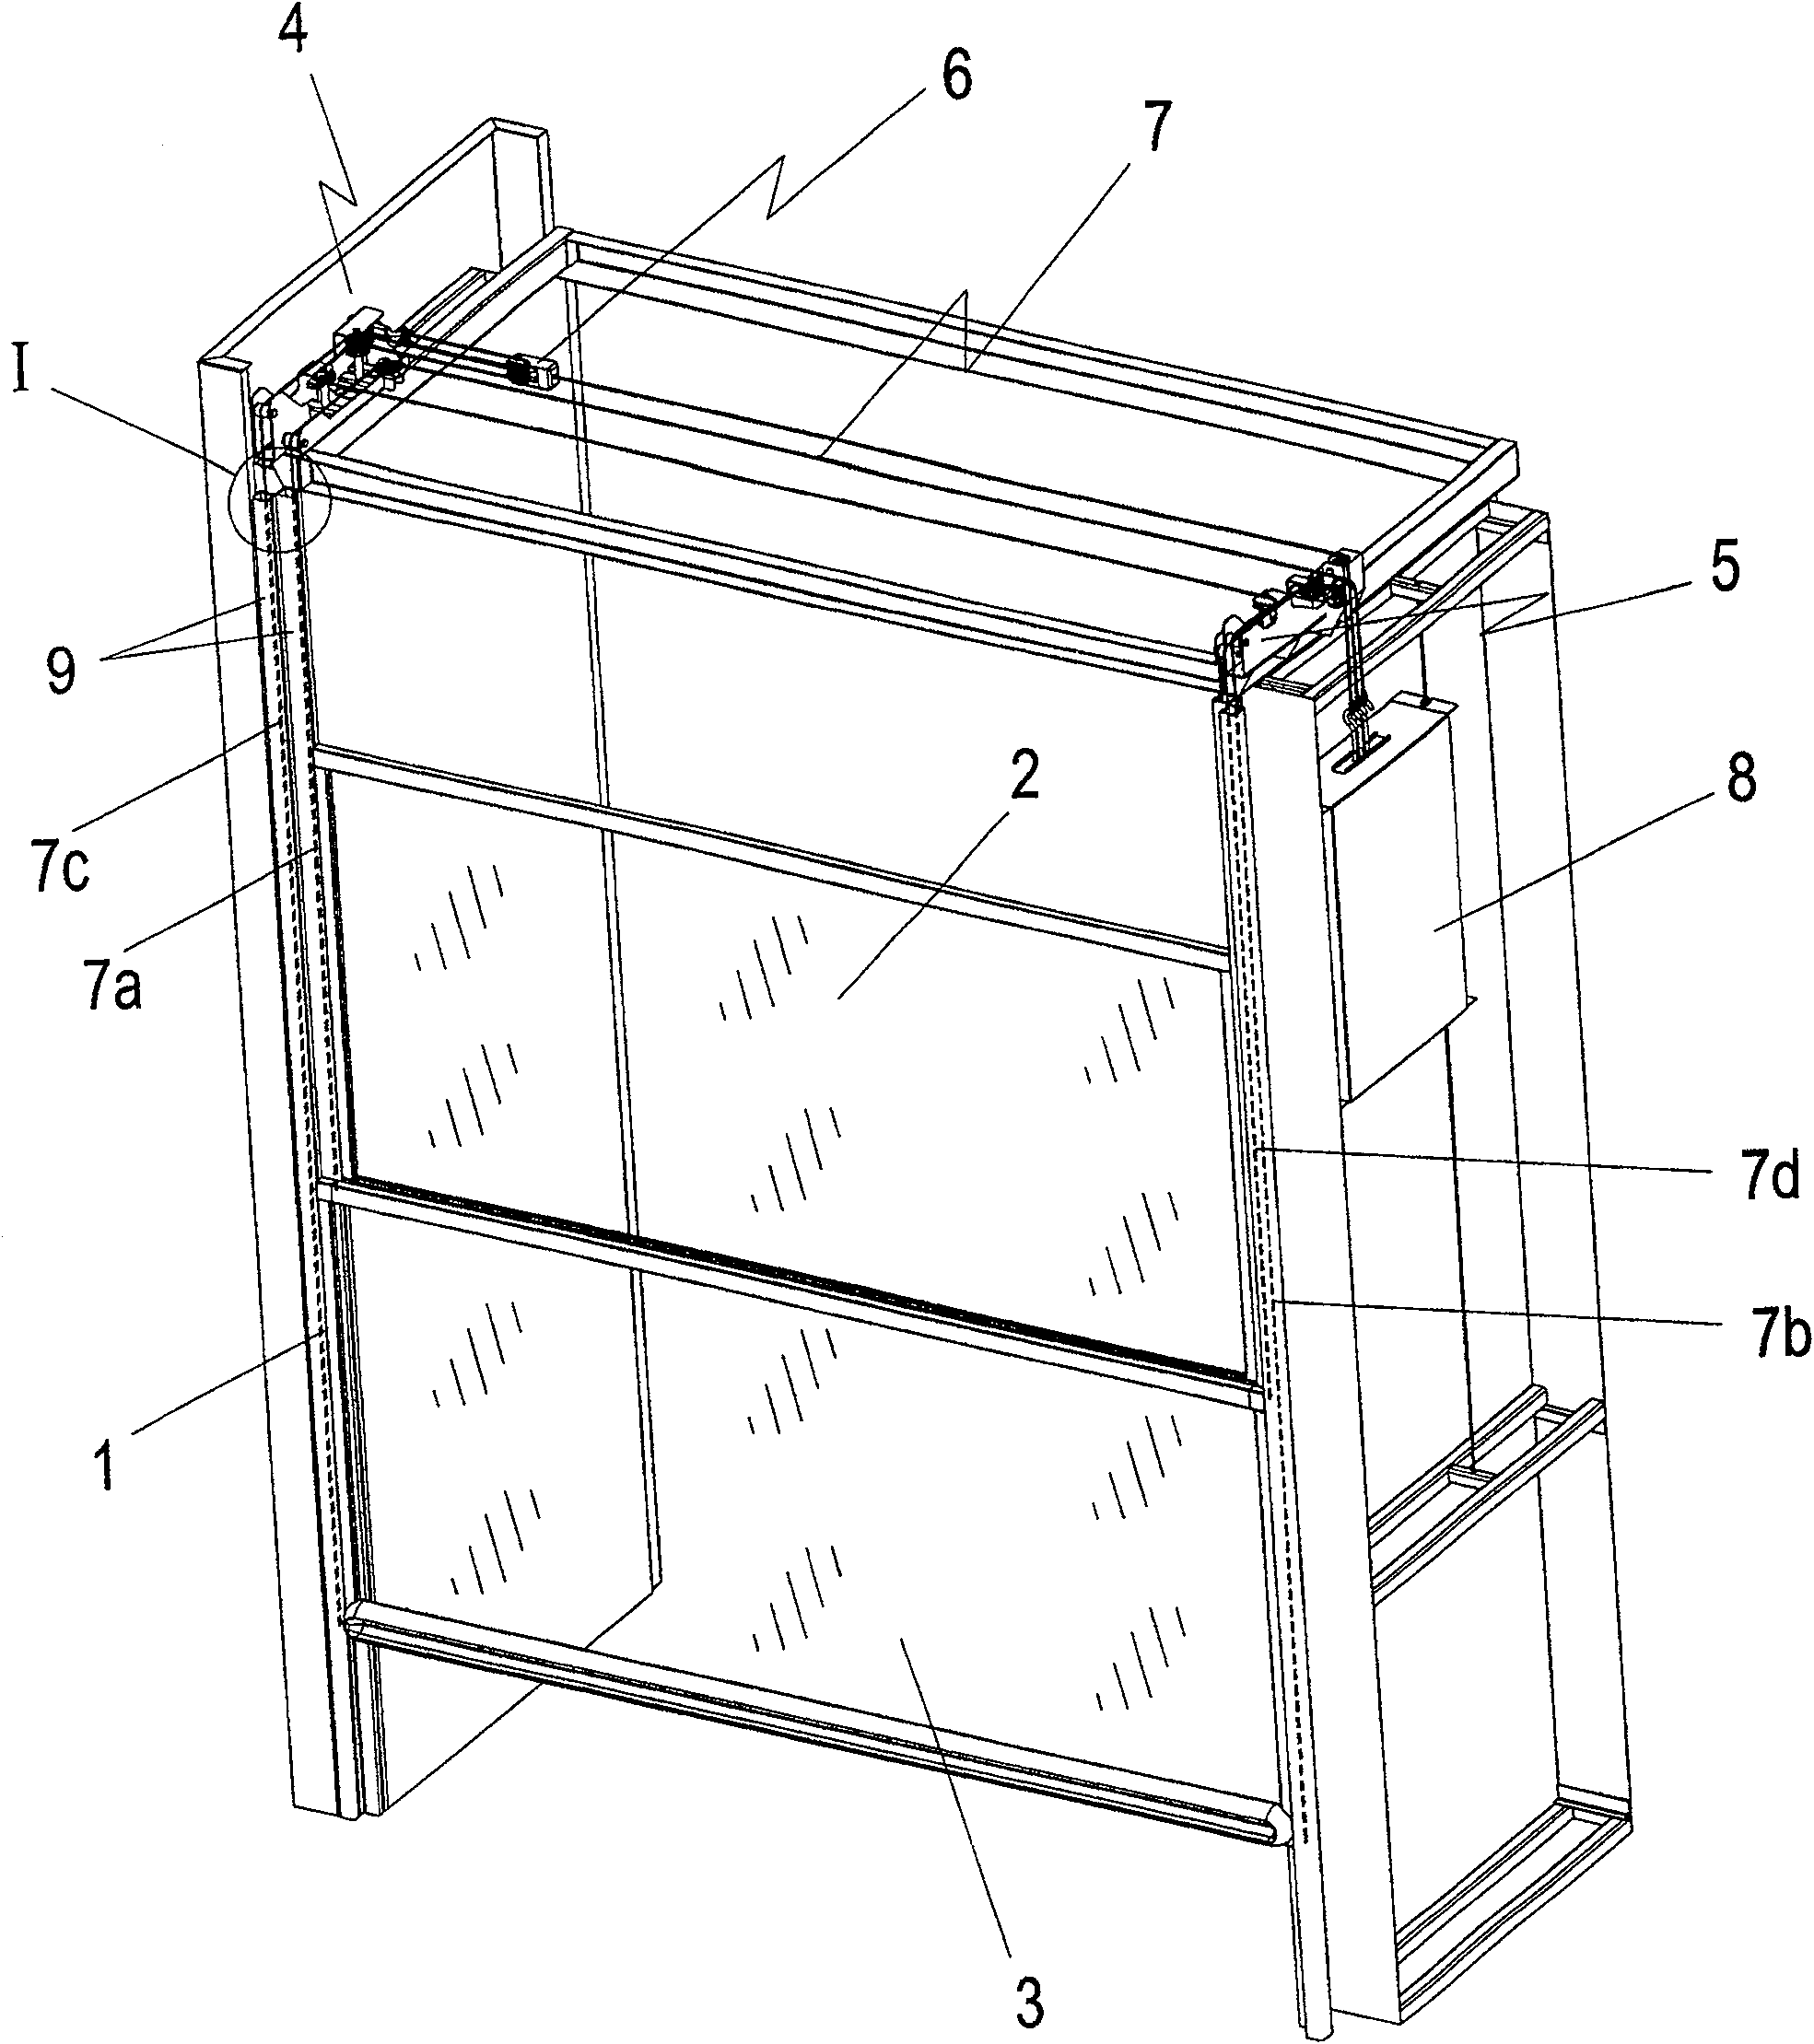 Interlock double-damper mechanism for smoke discharging cabinet